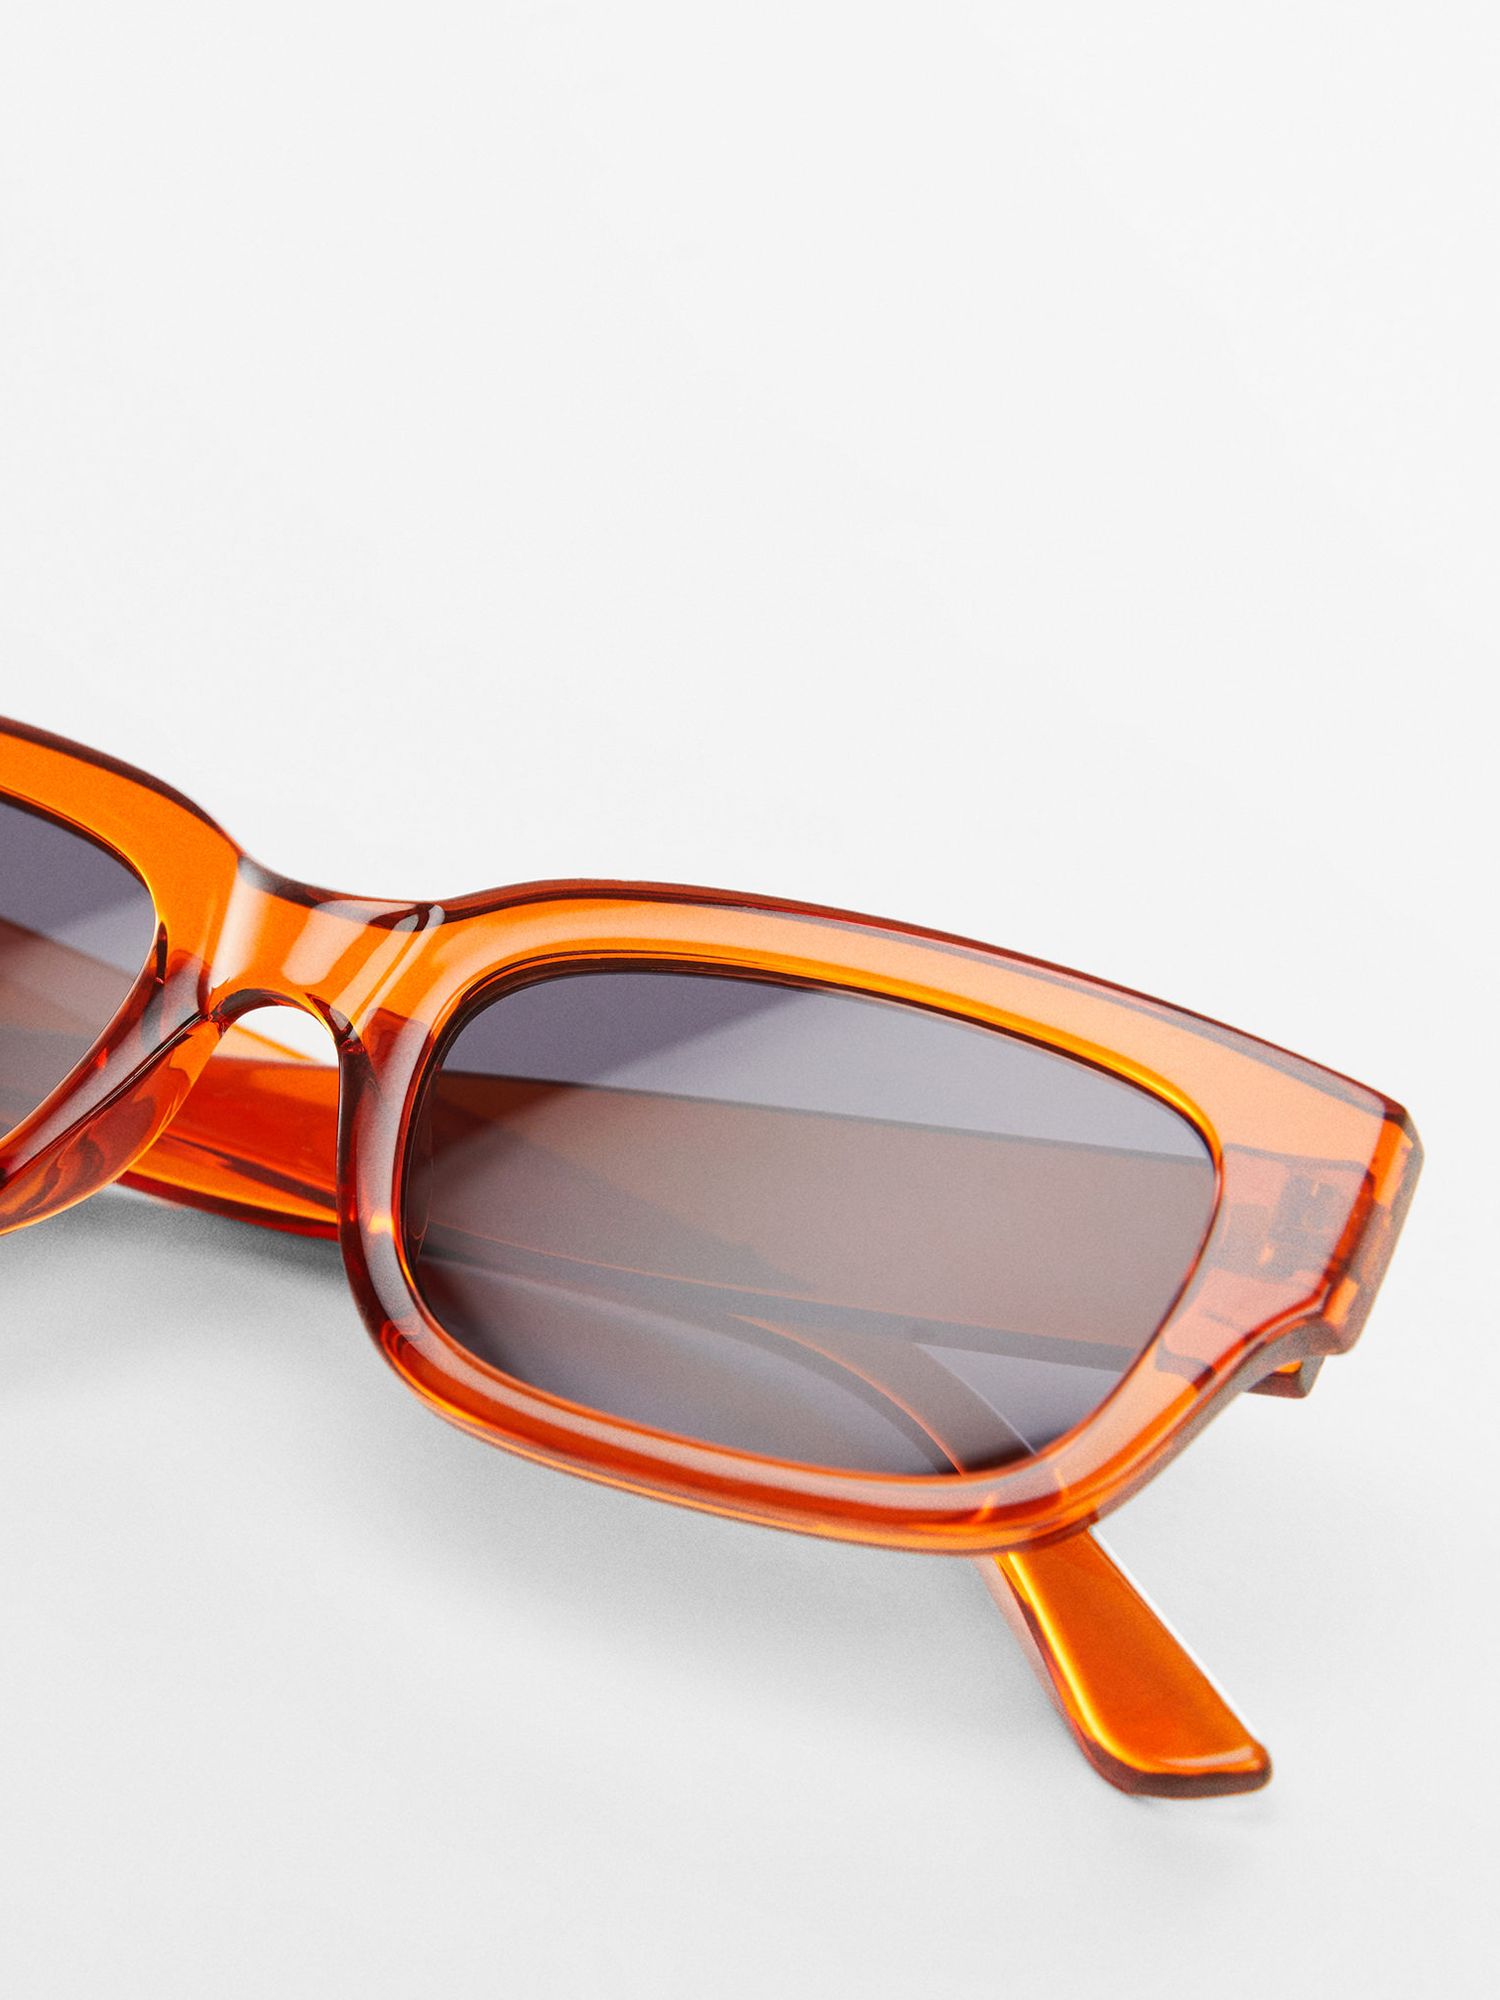 Mango Magali Rectangular Sunglasses, Orange/Grey, One Size